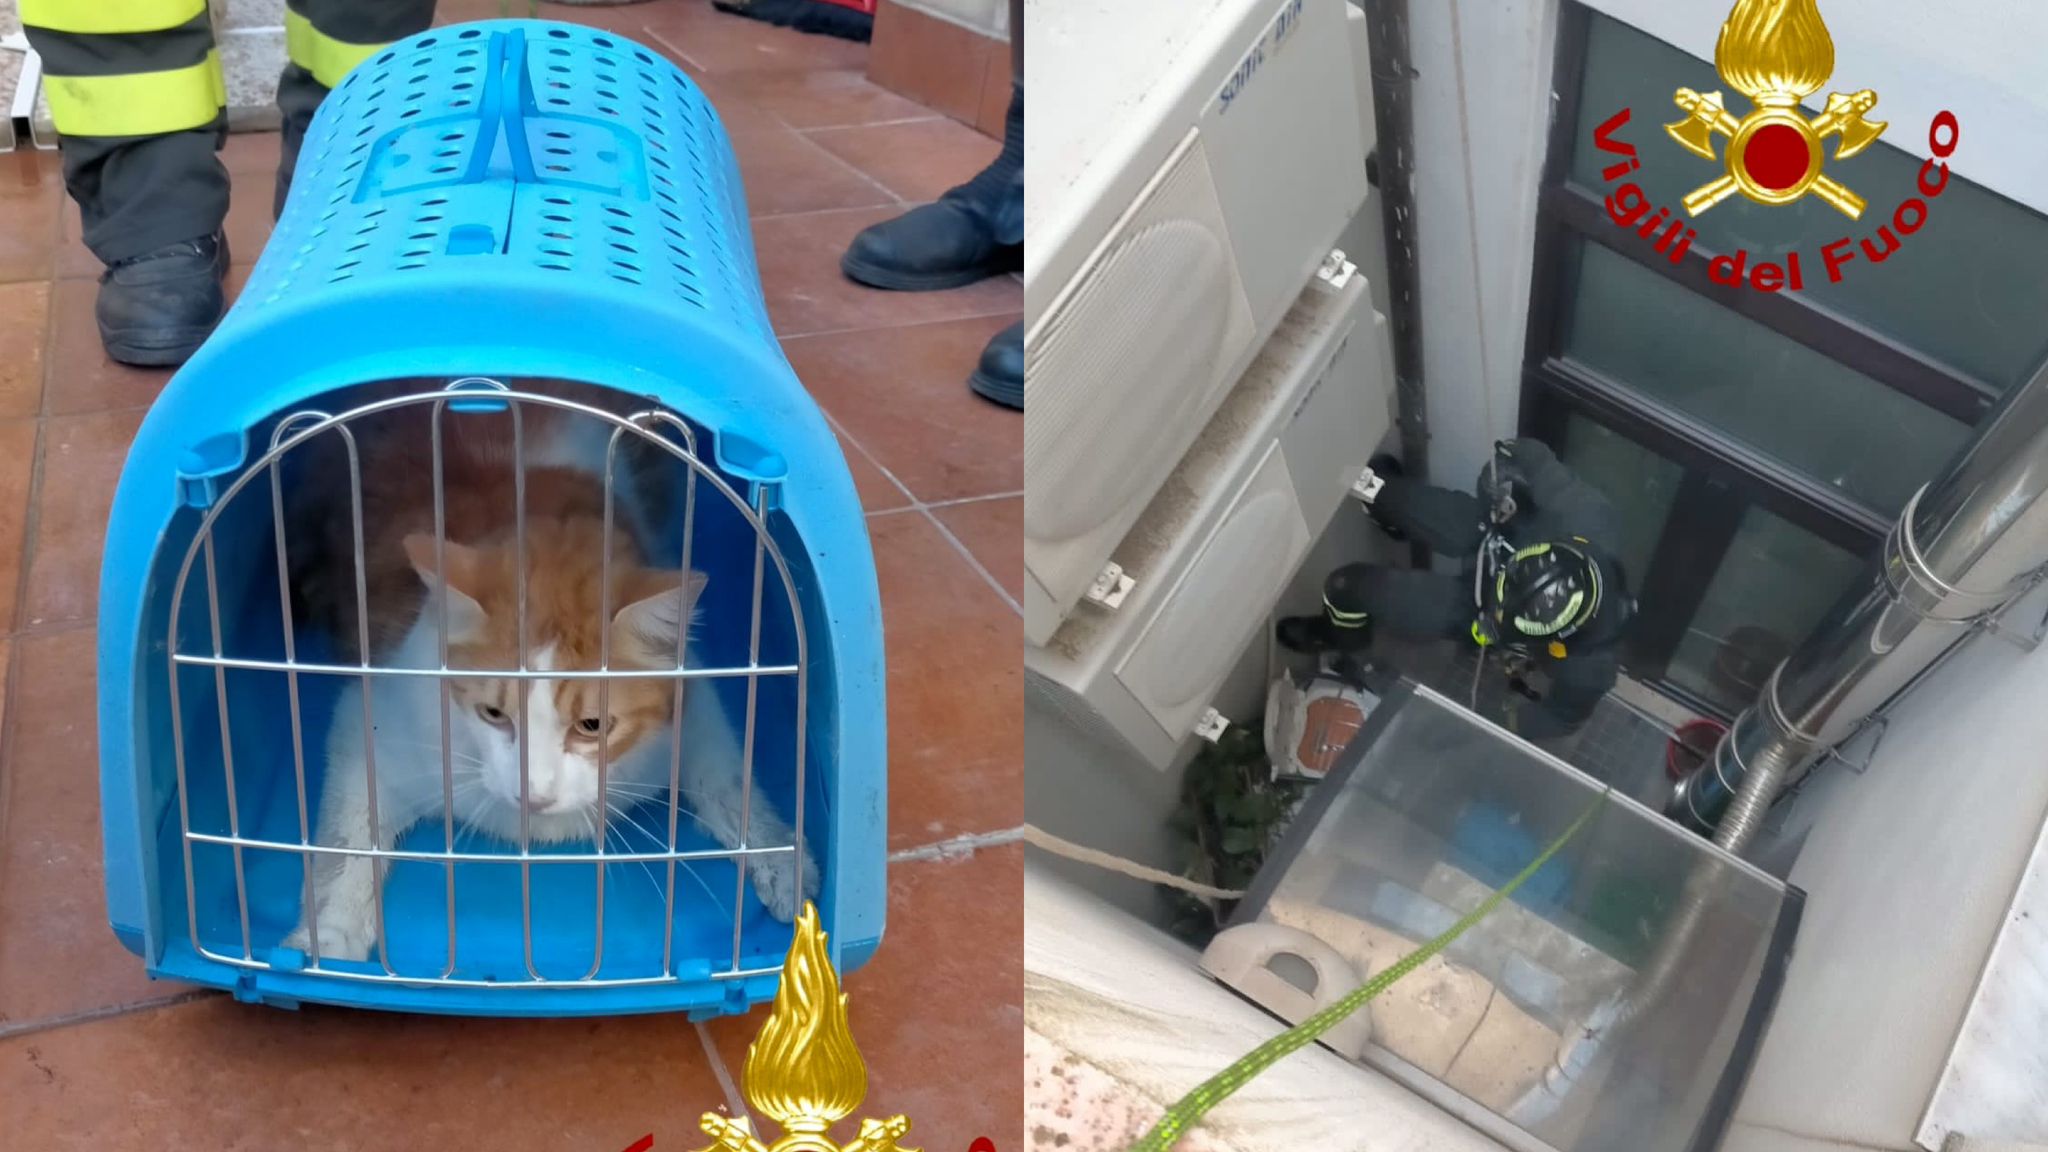 Nord Sardegna, gattino in difficoltà: in azione i Vigili del fuoco